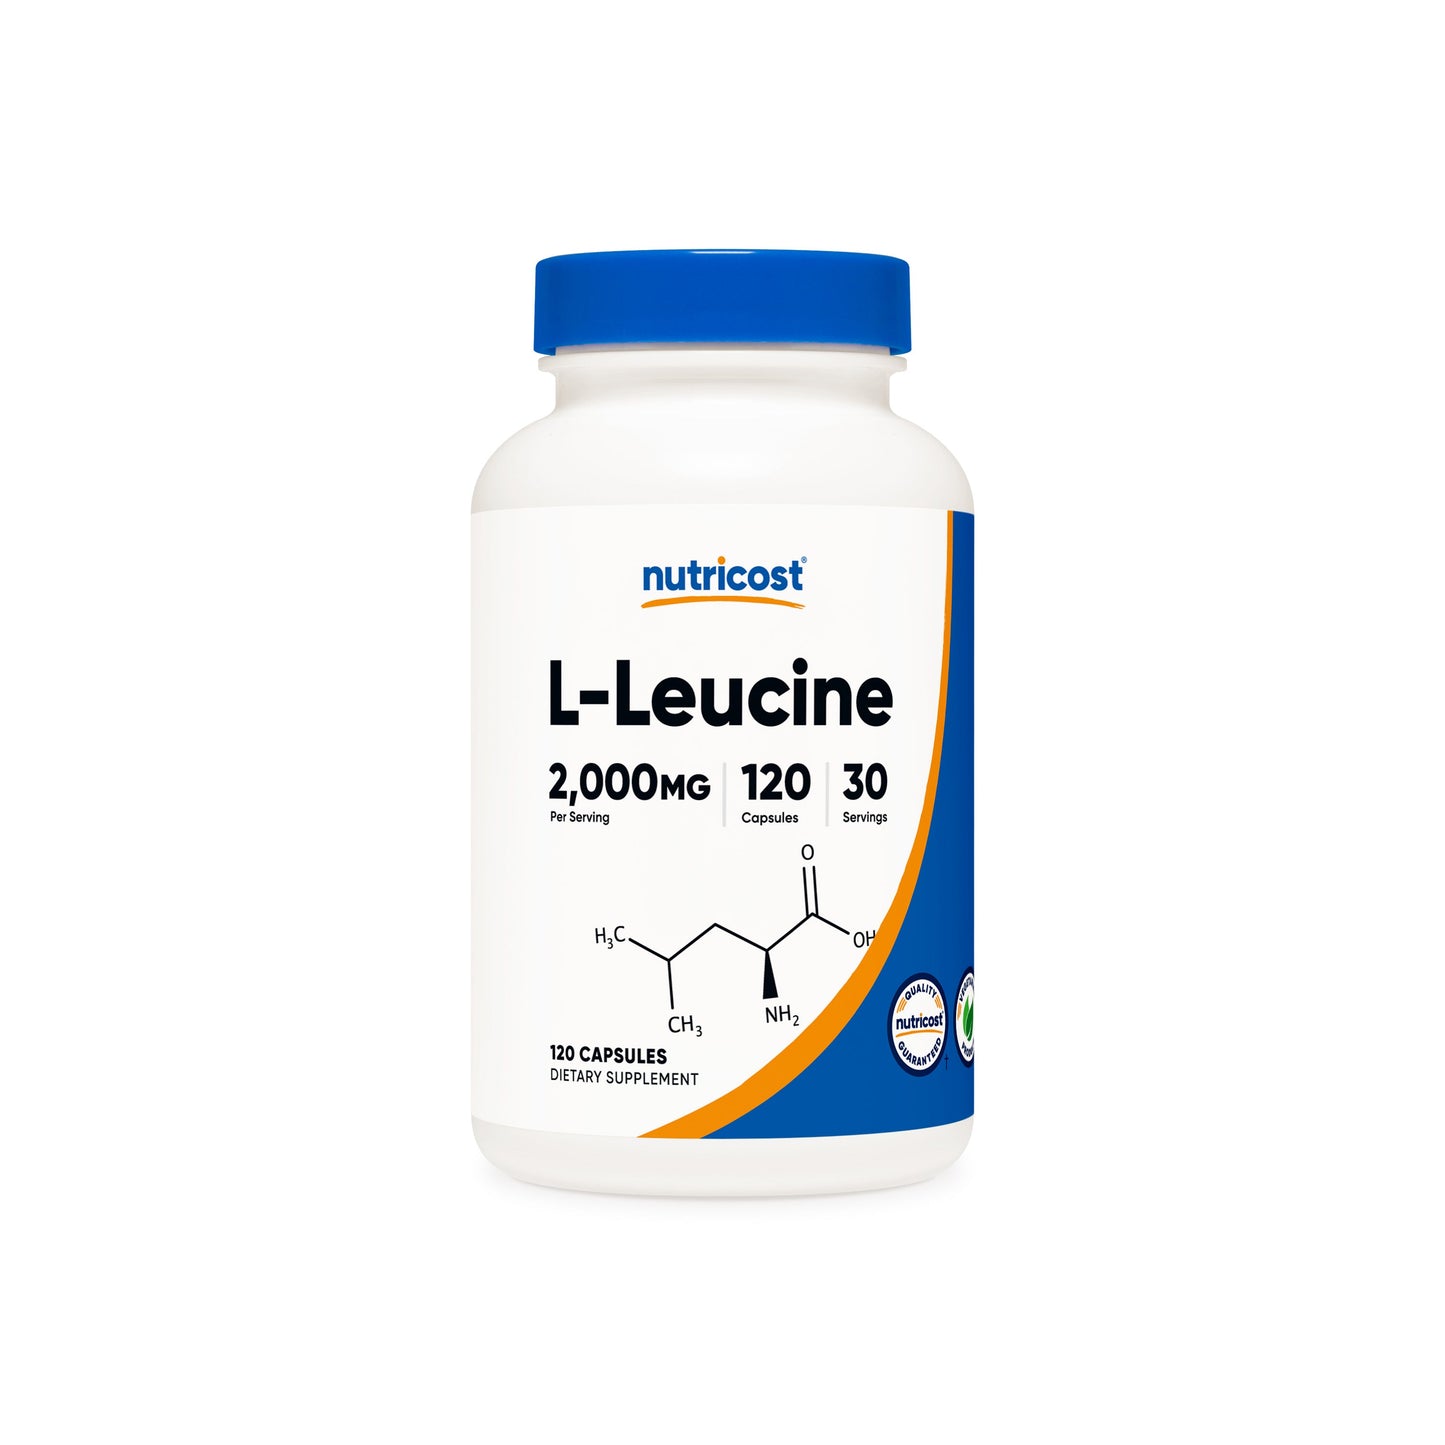 Nutricost L-Leucine Capsules